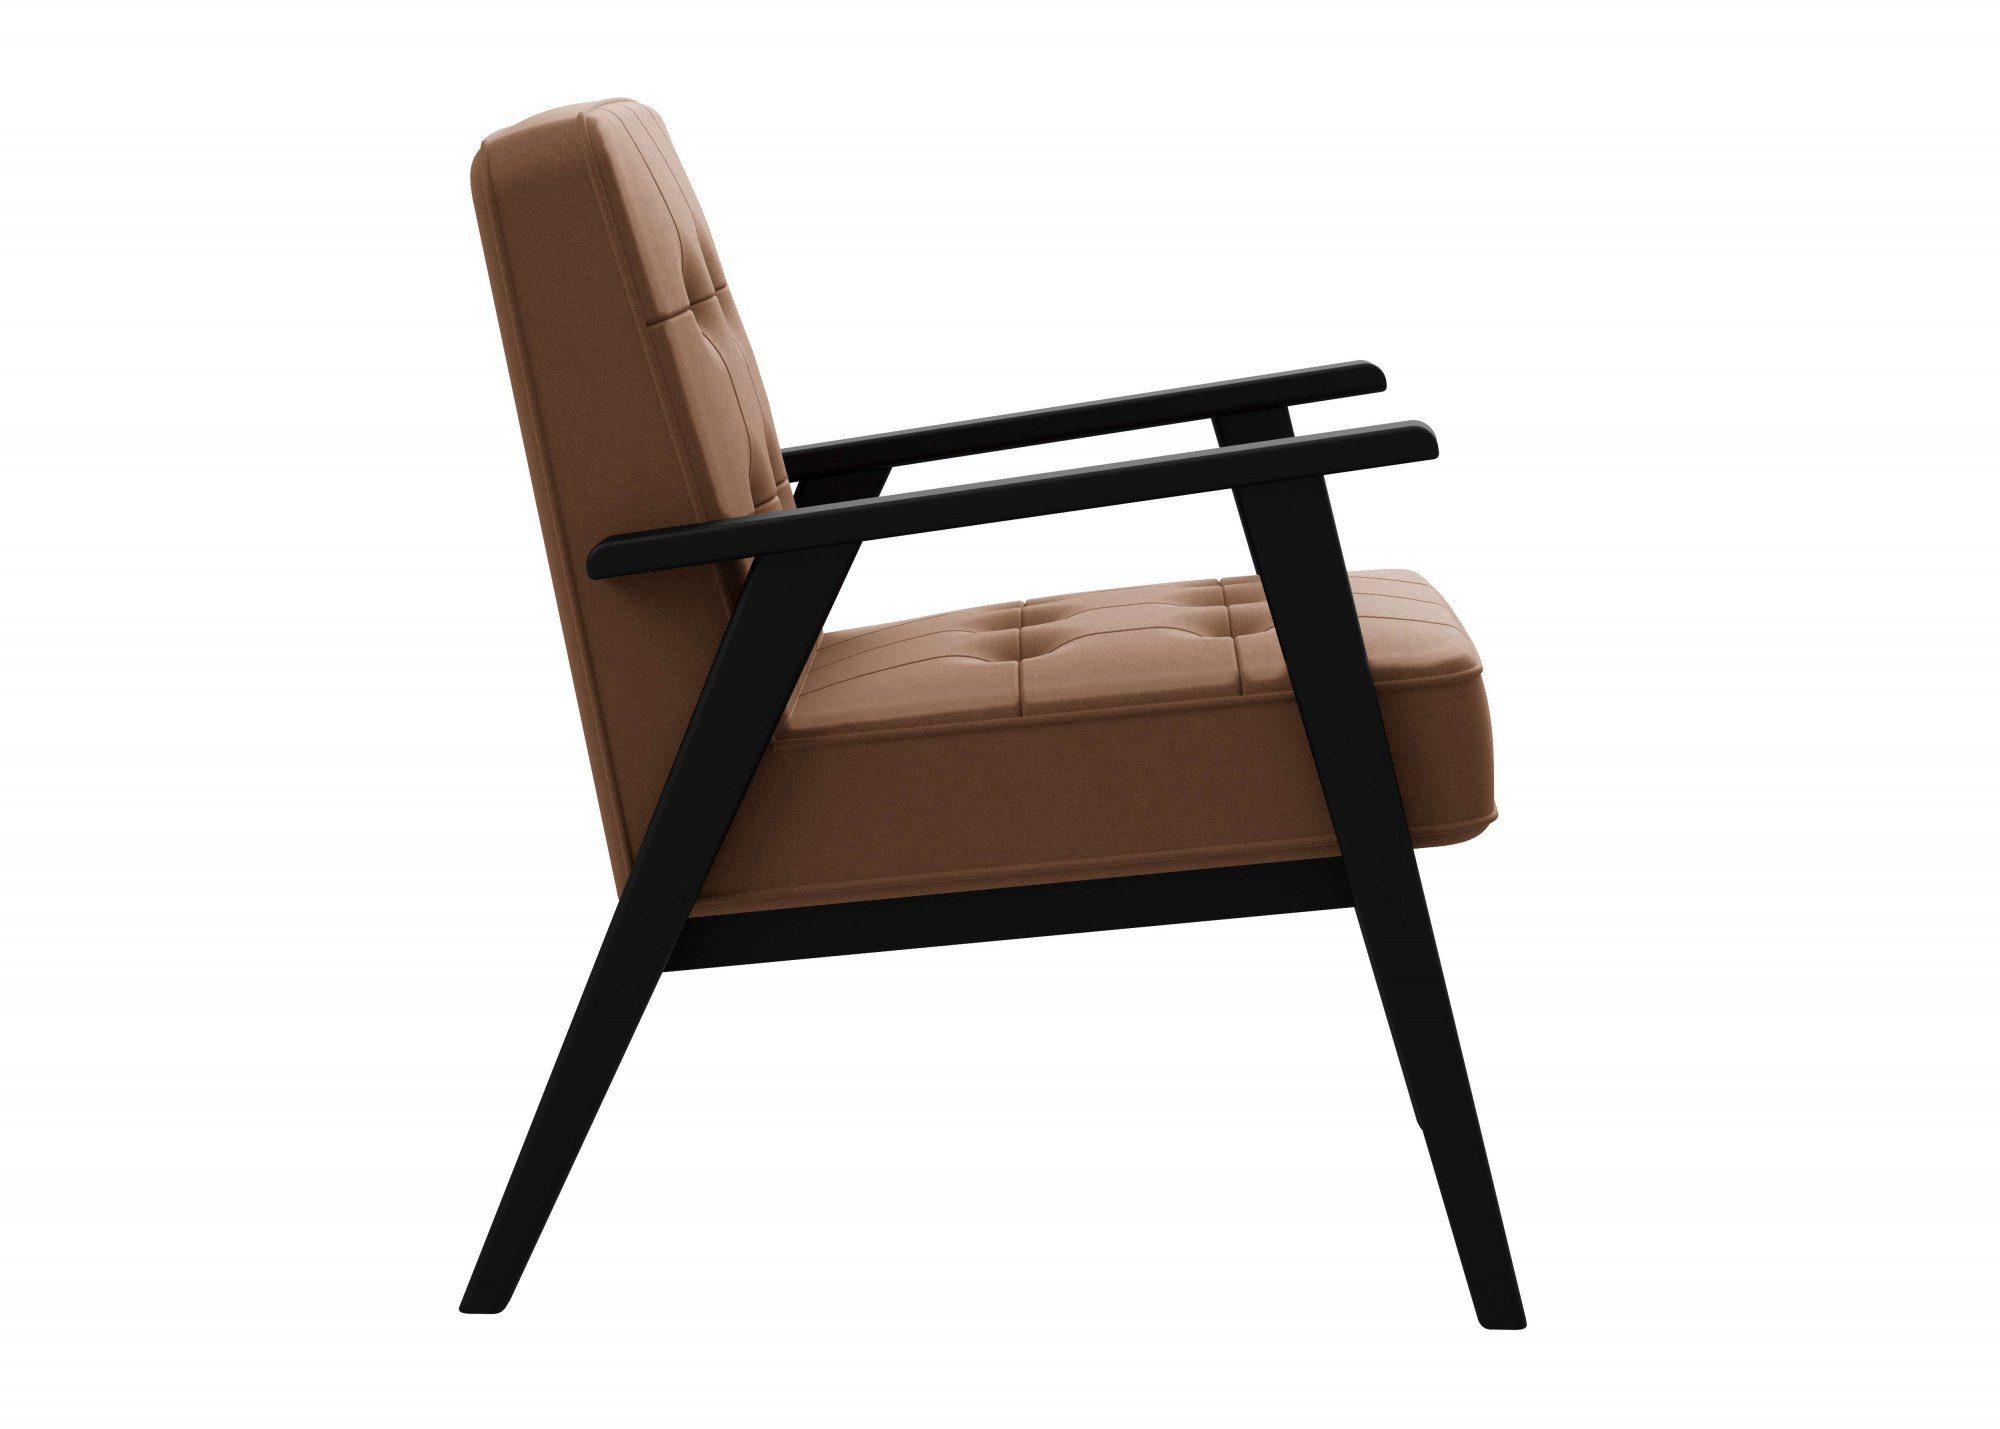 andas aus Picante mit Lederoptik, in Massivholz, Alvared, edles Design Sessel Sitzkomfort hohen Wellenunterfederung für